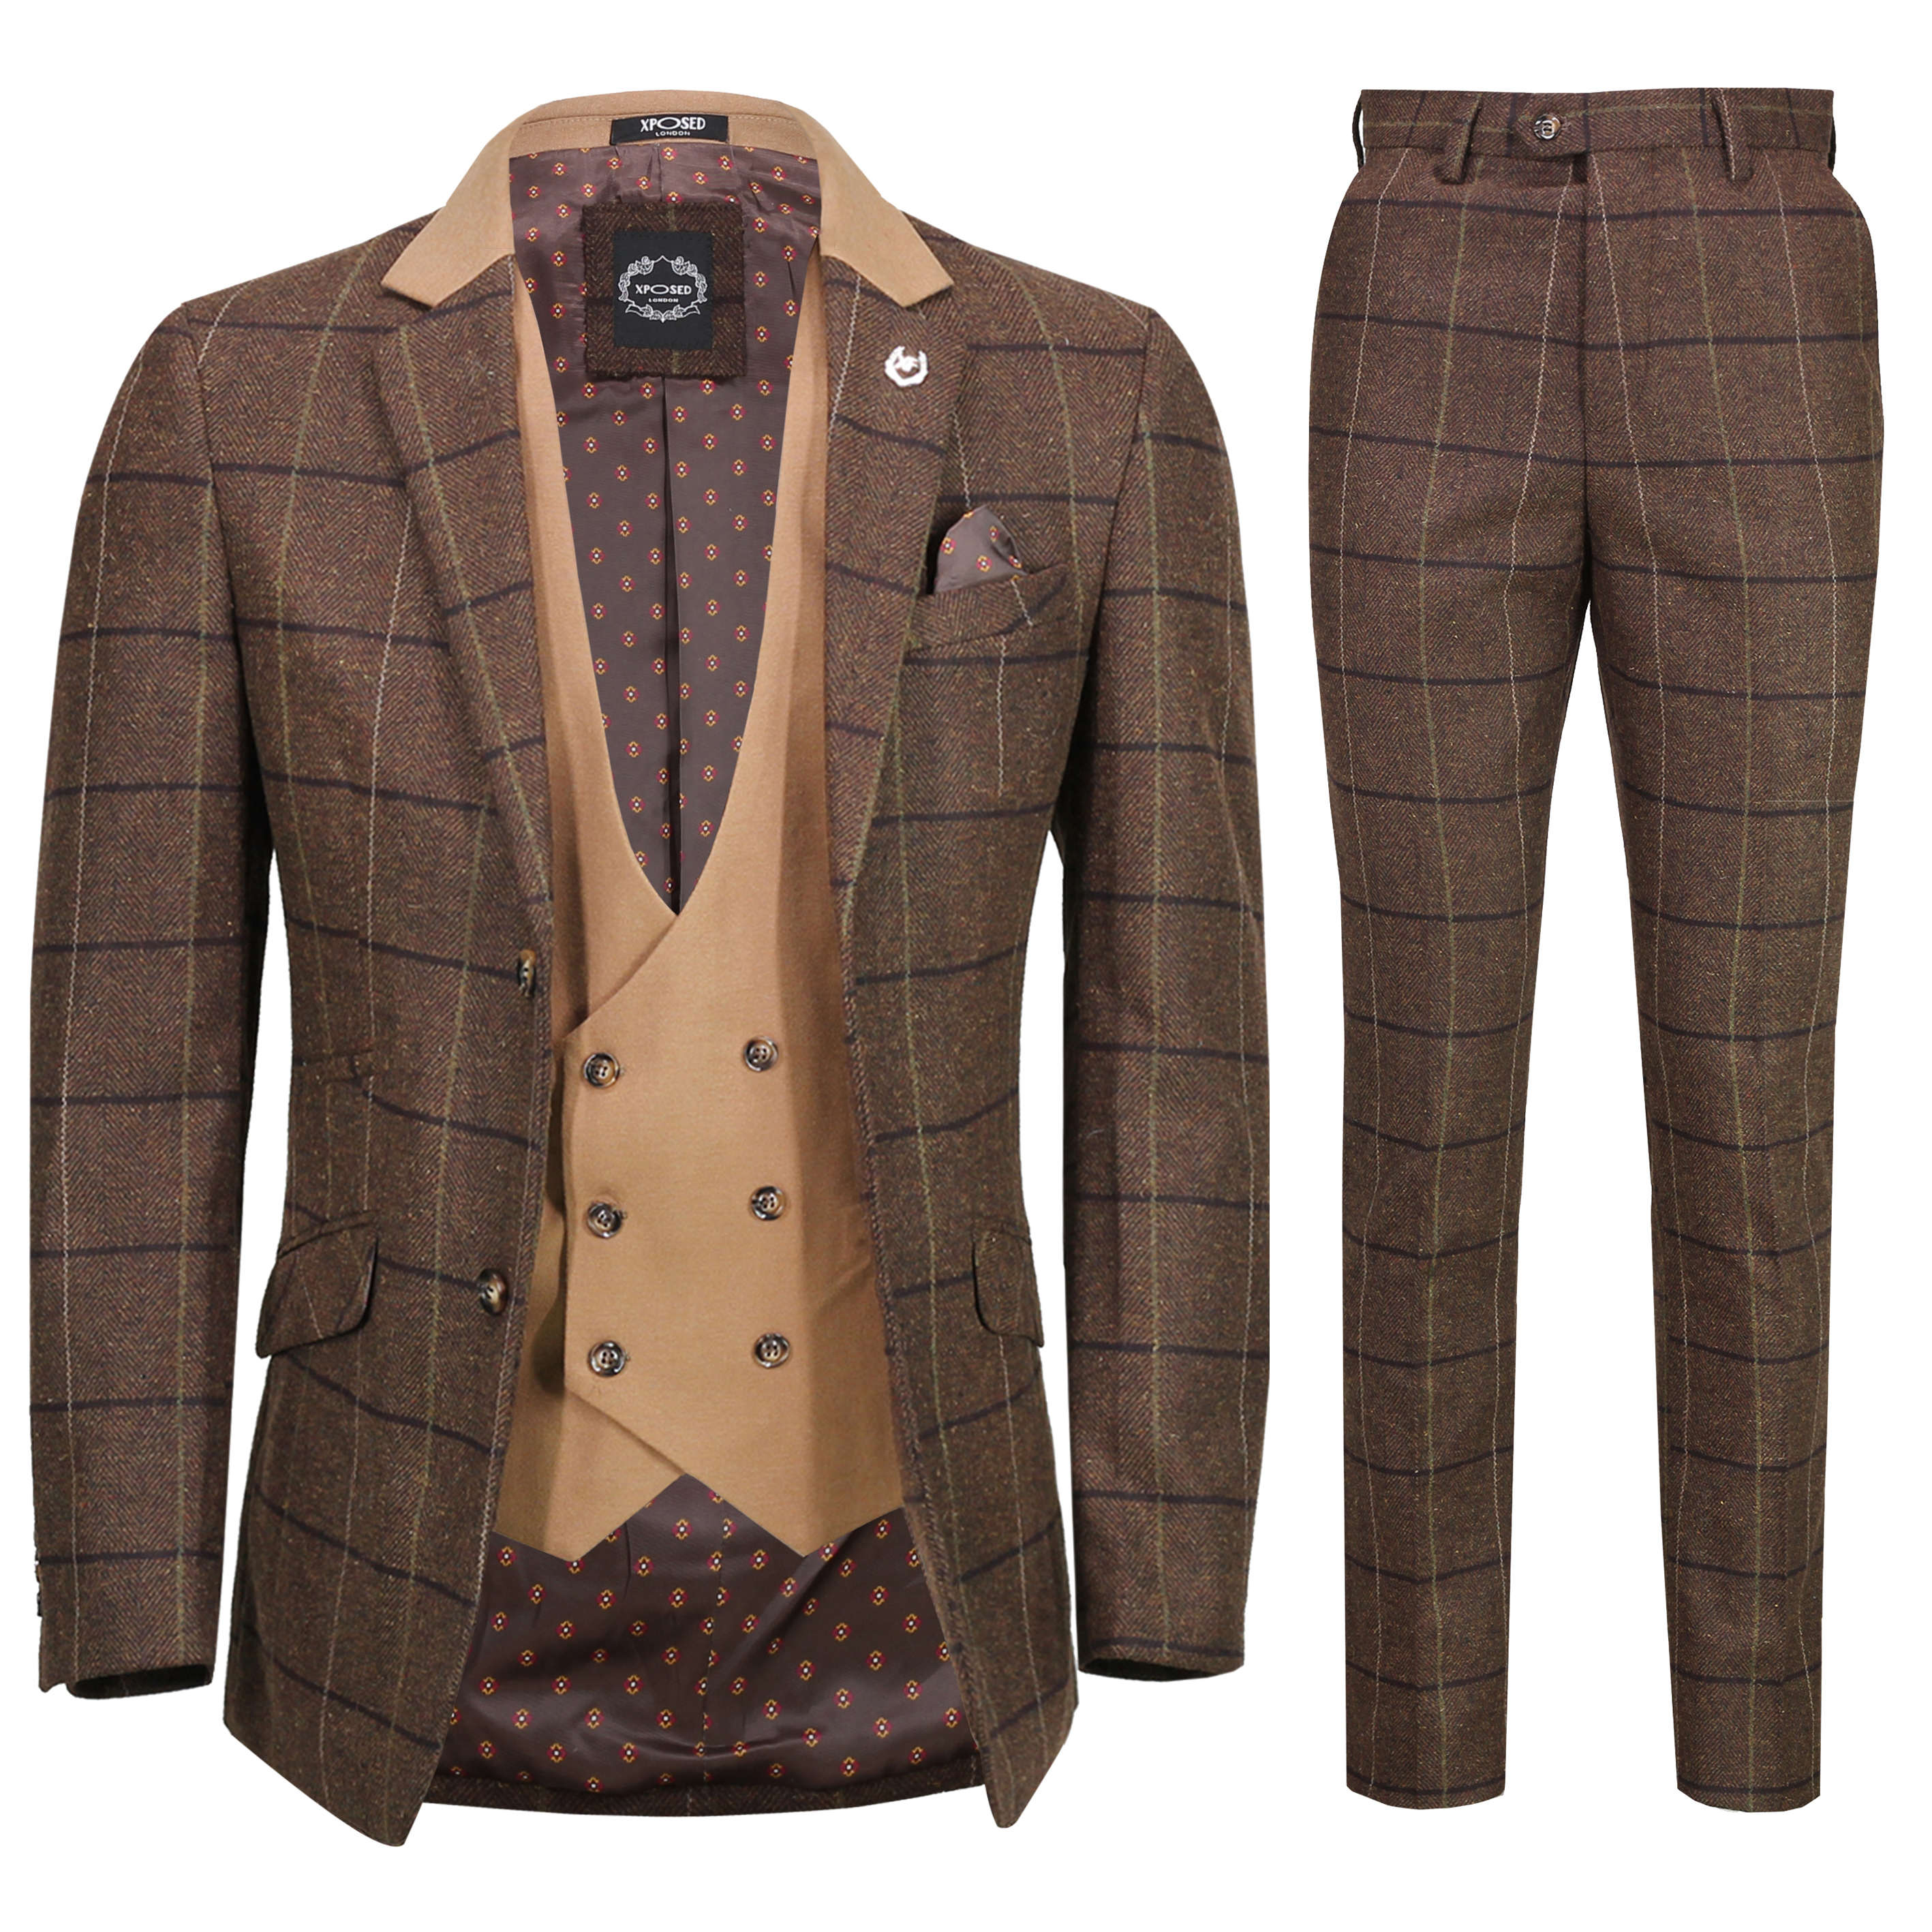 Herren Classic 3 Stück Tweed Anzug Herringbone Check Smart Retro